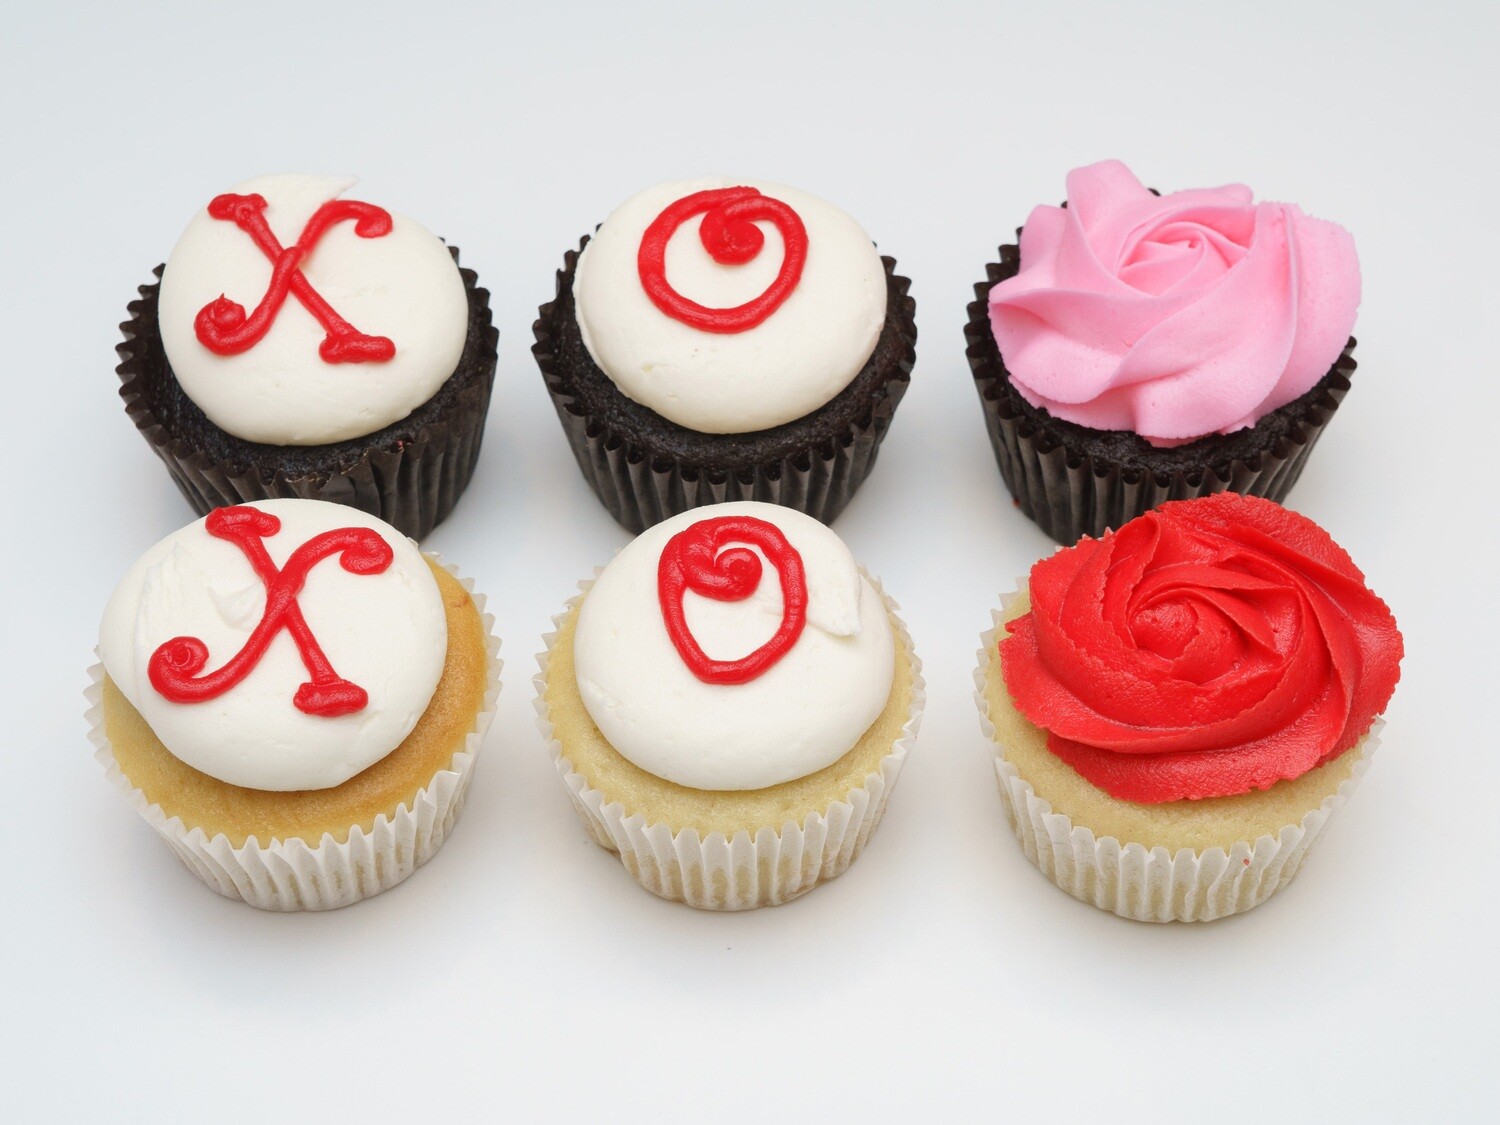 Xoxo and Rosette Half Dozen Cupcakes